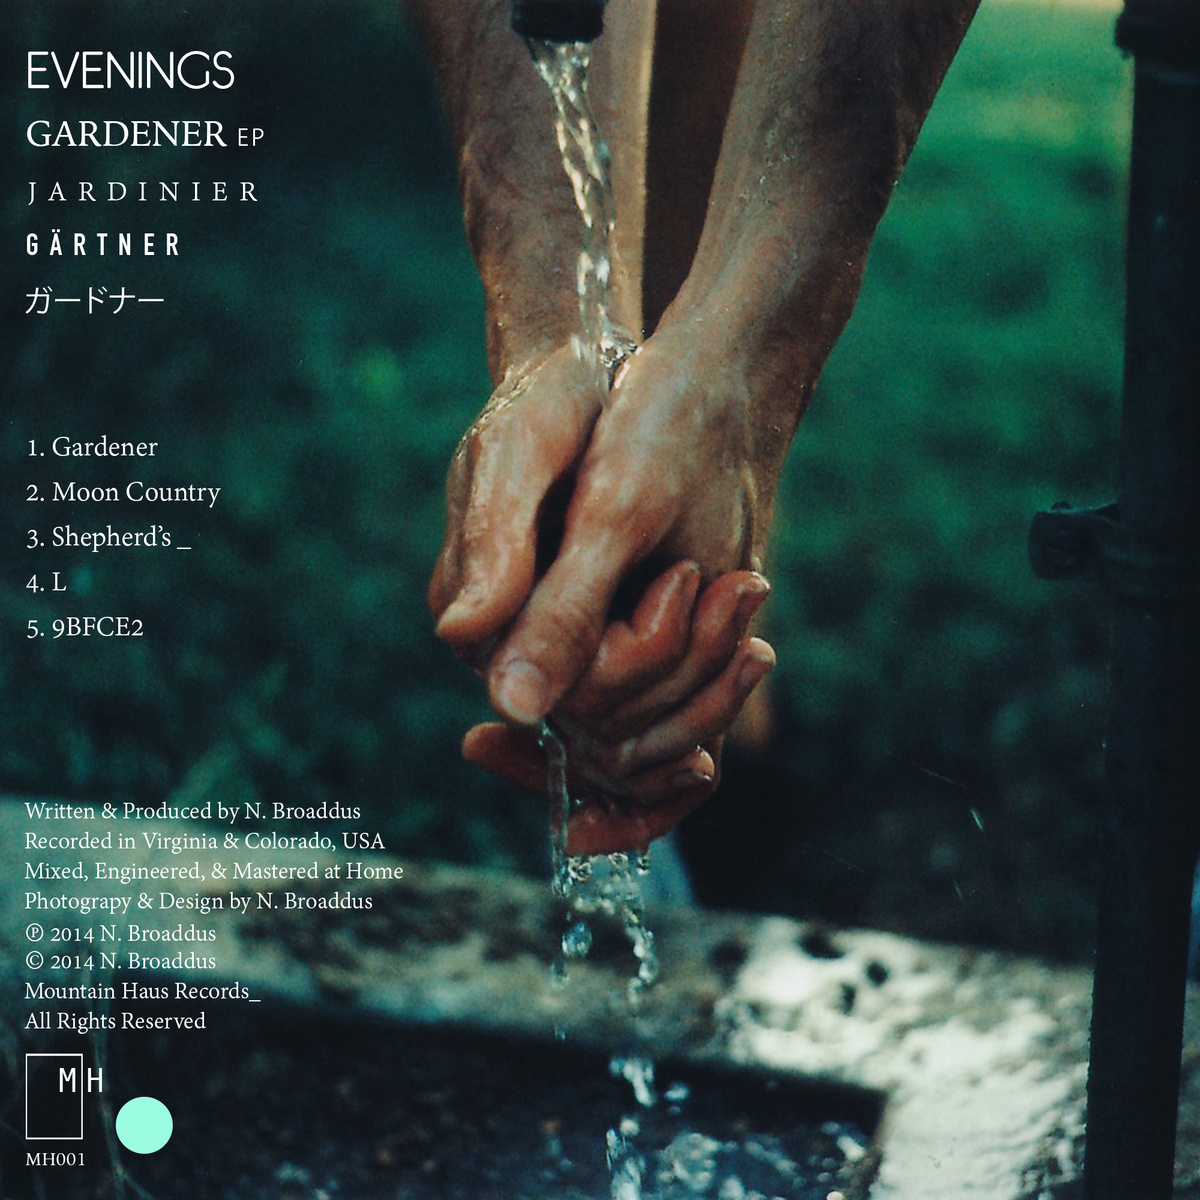 Evenings "Gardener EP" Release 